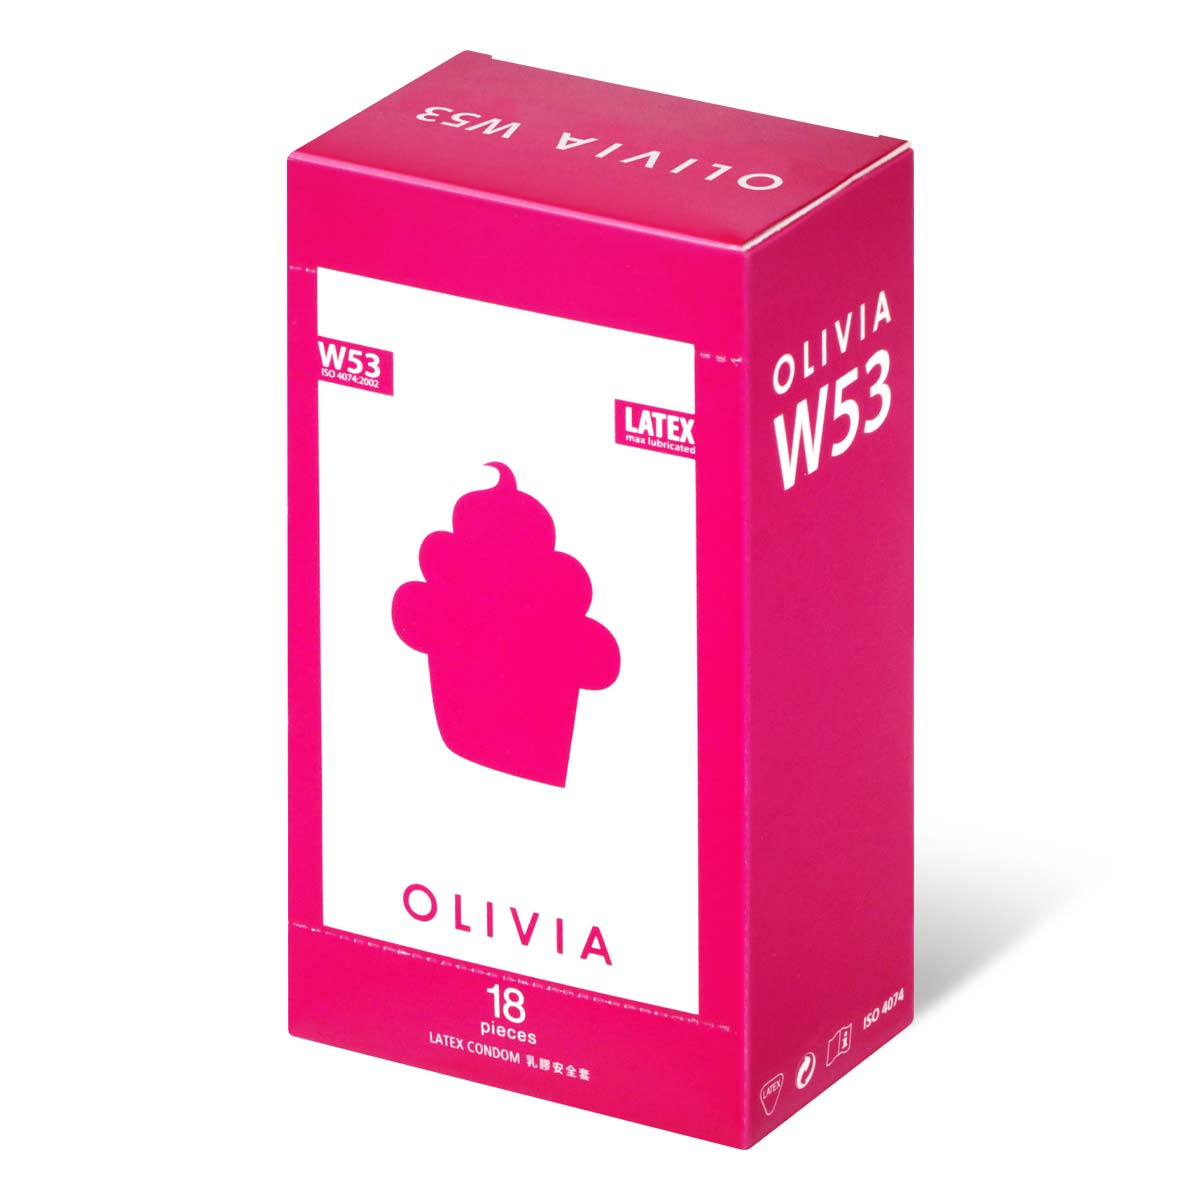 奧莉維亞 W53 系列最多潤滑劑型 18 片裝 乳膠安全套-p_1